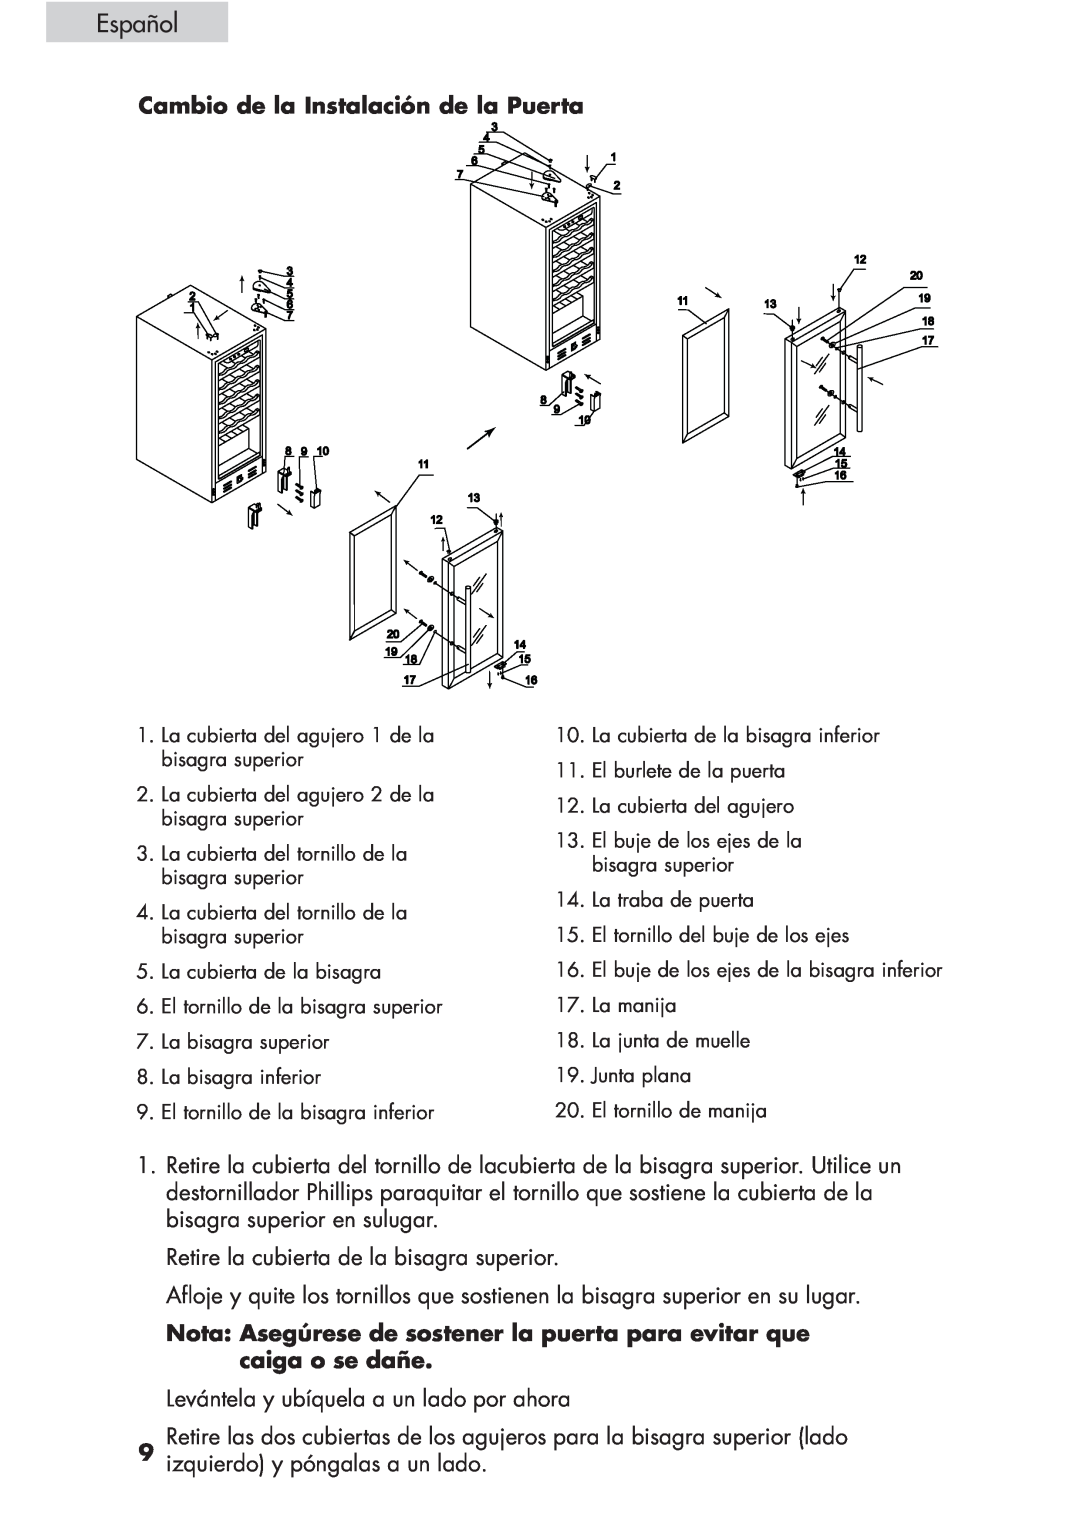 Haier HVCE24, HVCE15 user manual Español, Cambio de la Instalación de la Puerta 